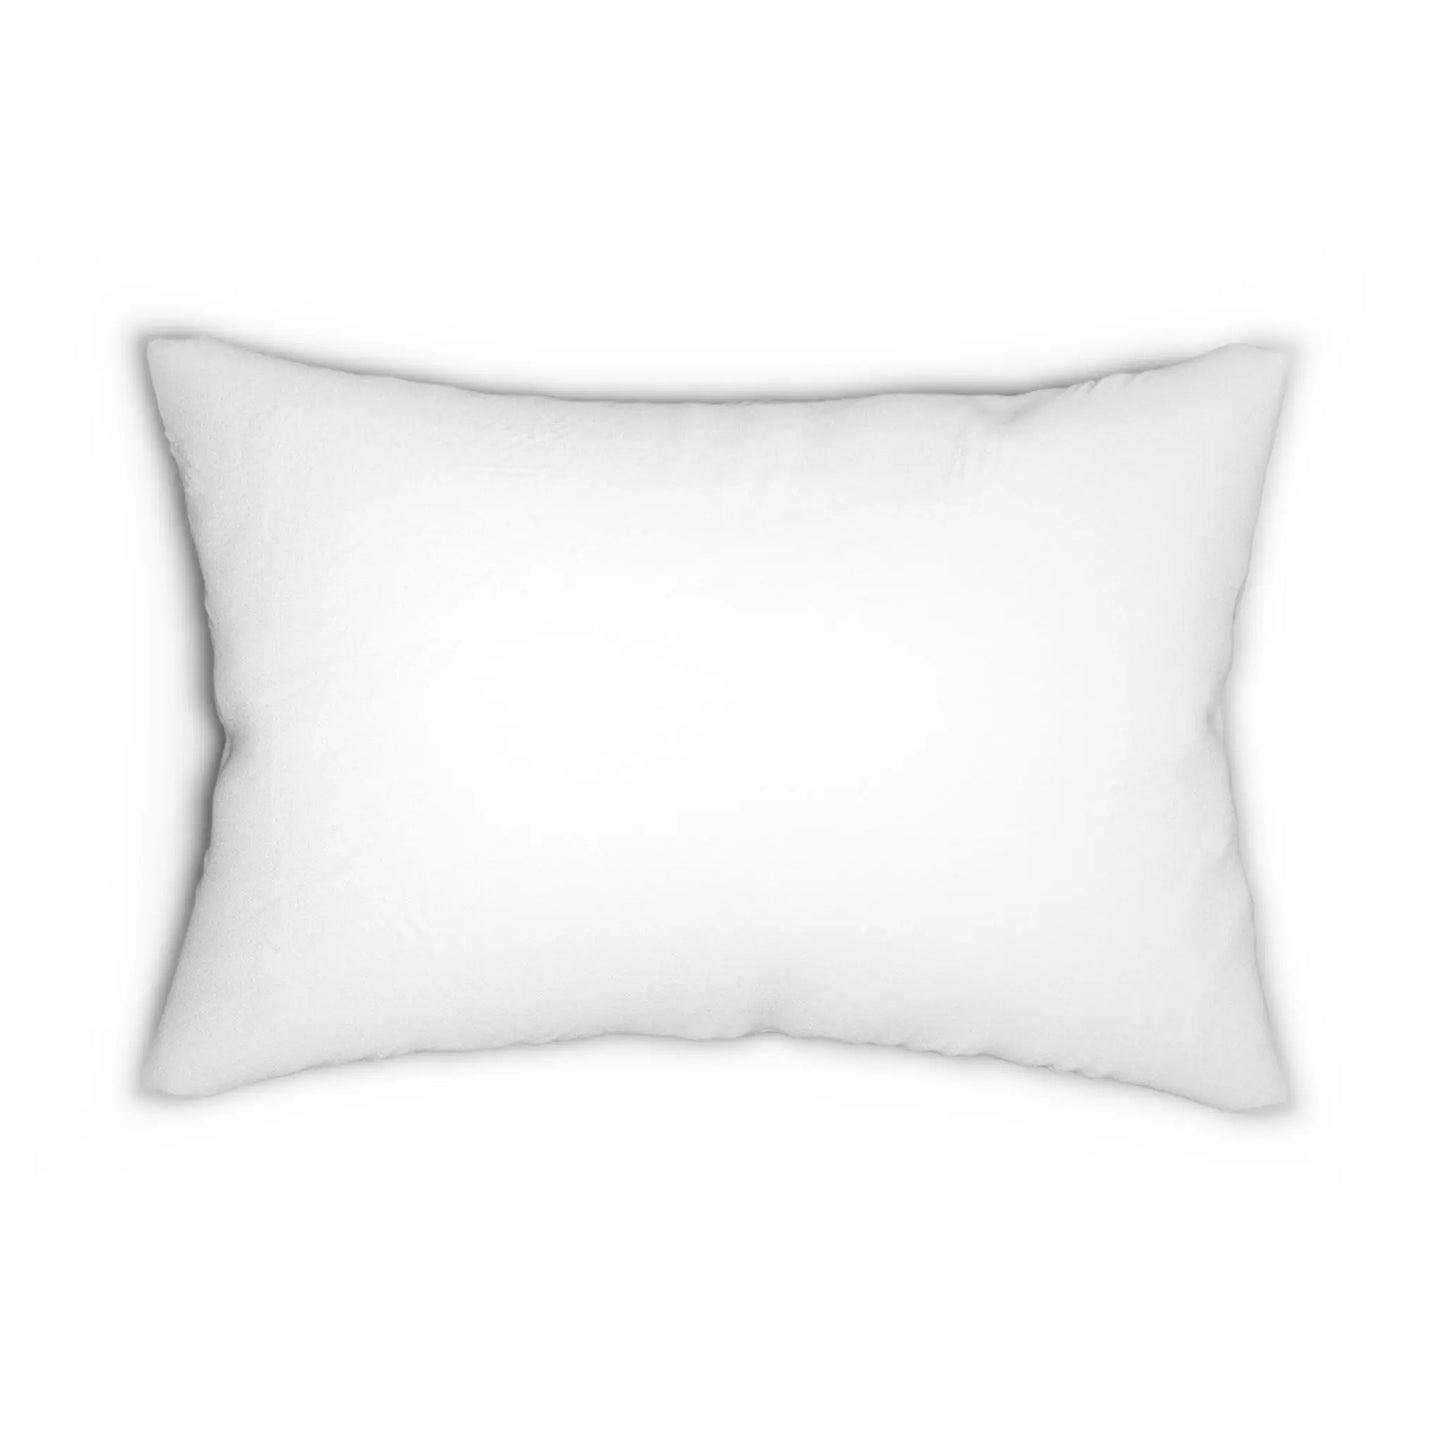 Spun Polyester Lumbar Pillow - THE VEEG